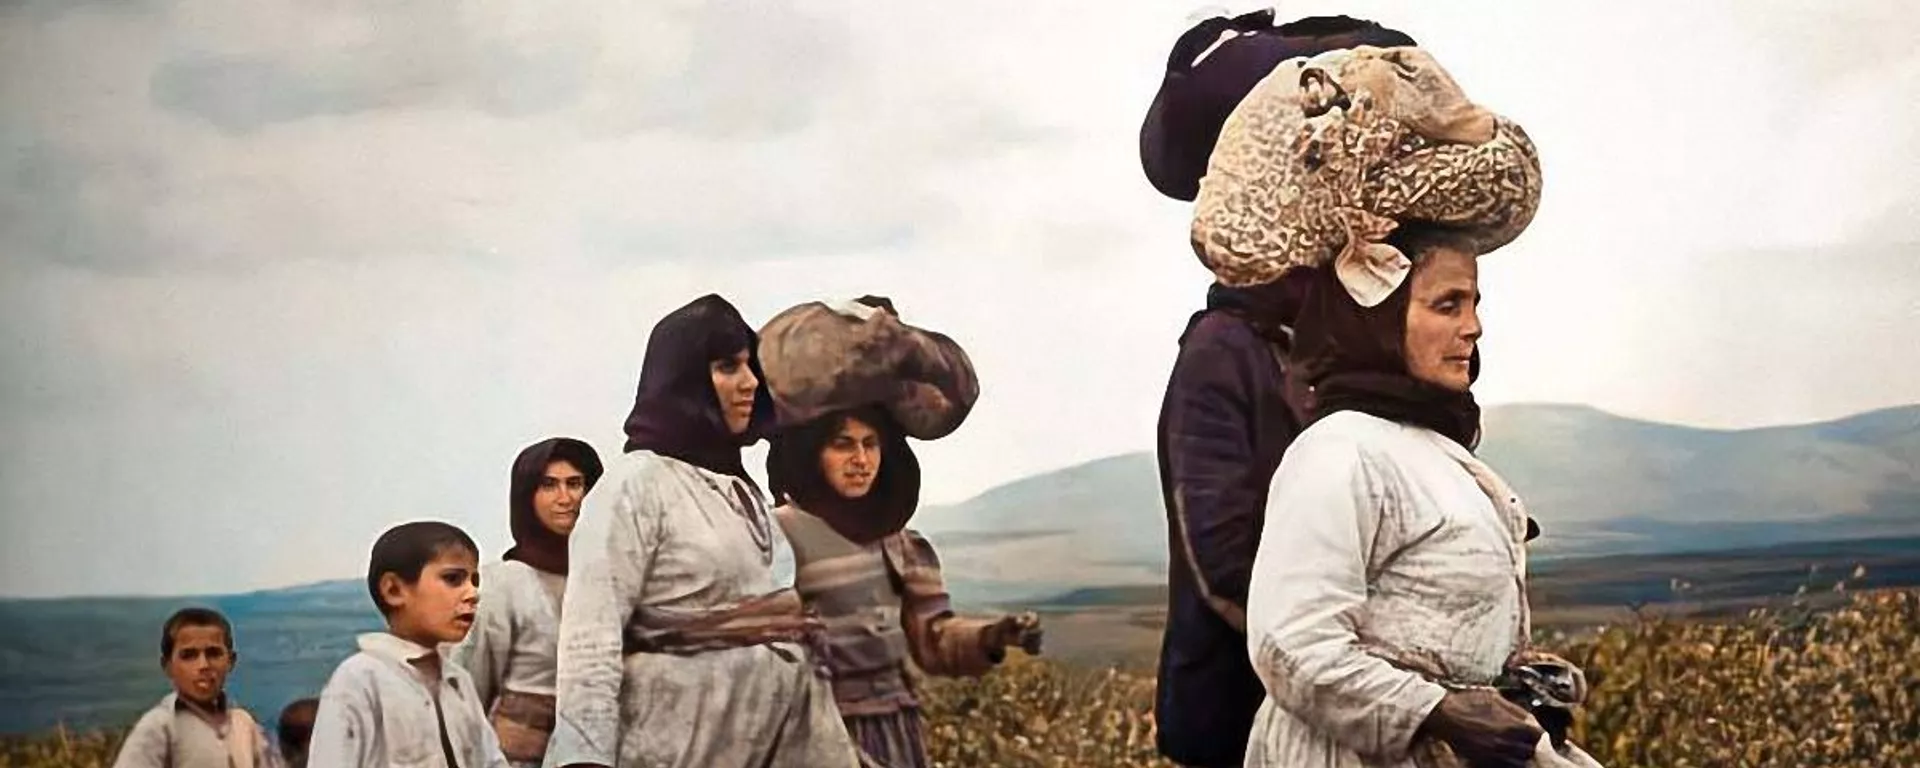 سلسلة من الصور الملونة التي التقطت أثناء أحداث النكبة عام 1948، حيث تظهر المعاناة المؤلمة التي عاشها الأطفال وآباؤهم في تلك المرحلة القاسية من تاريخ فلسطين - سبوتنيك عربي, 1920, 14.05.2023